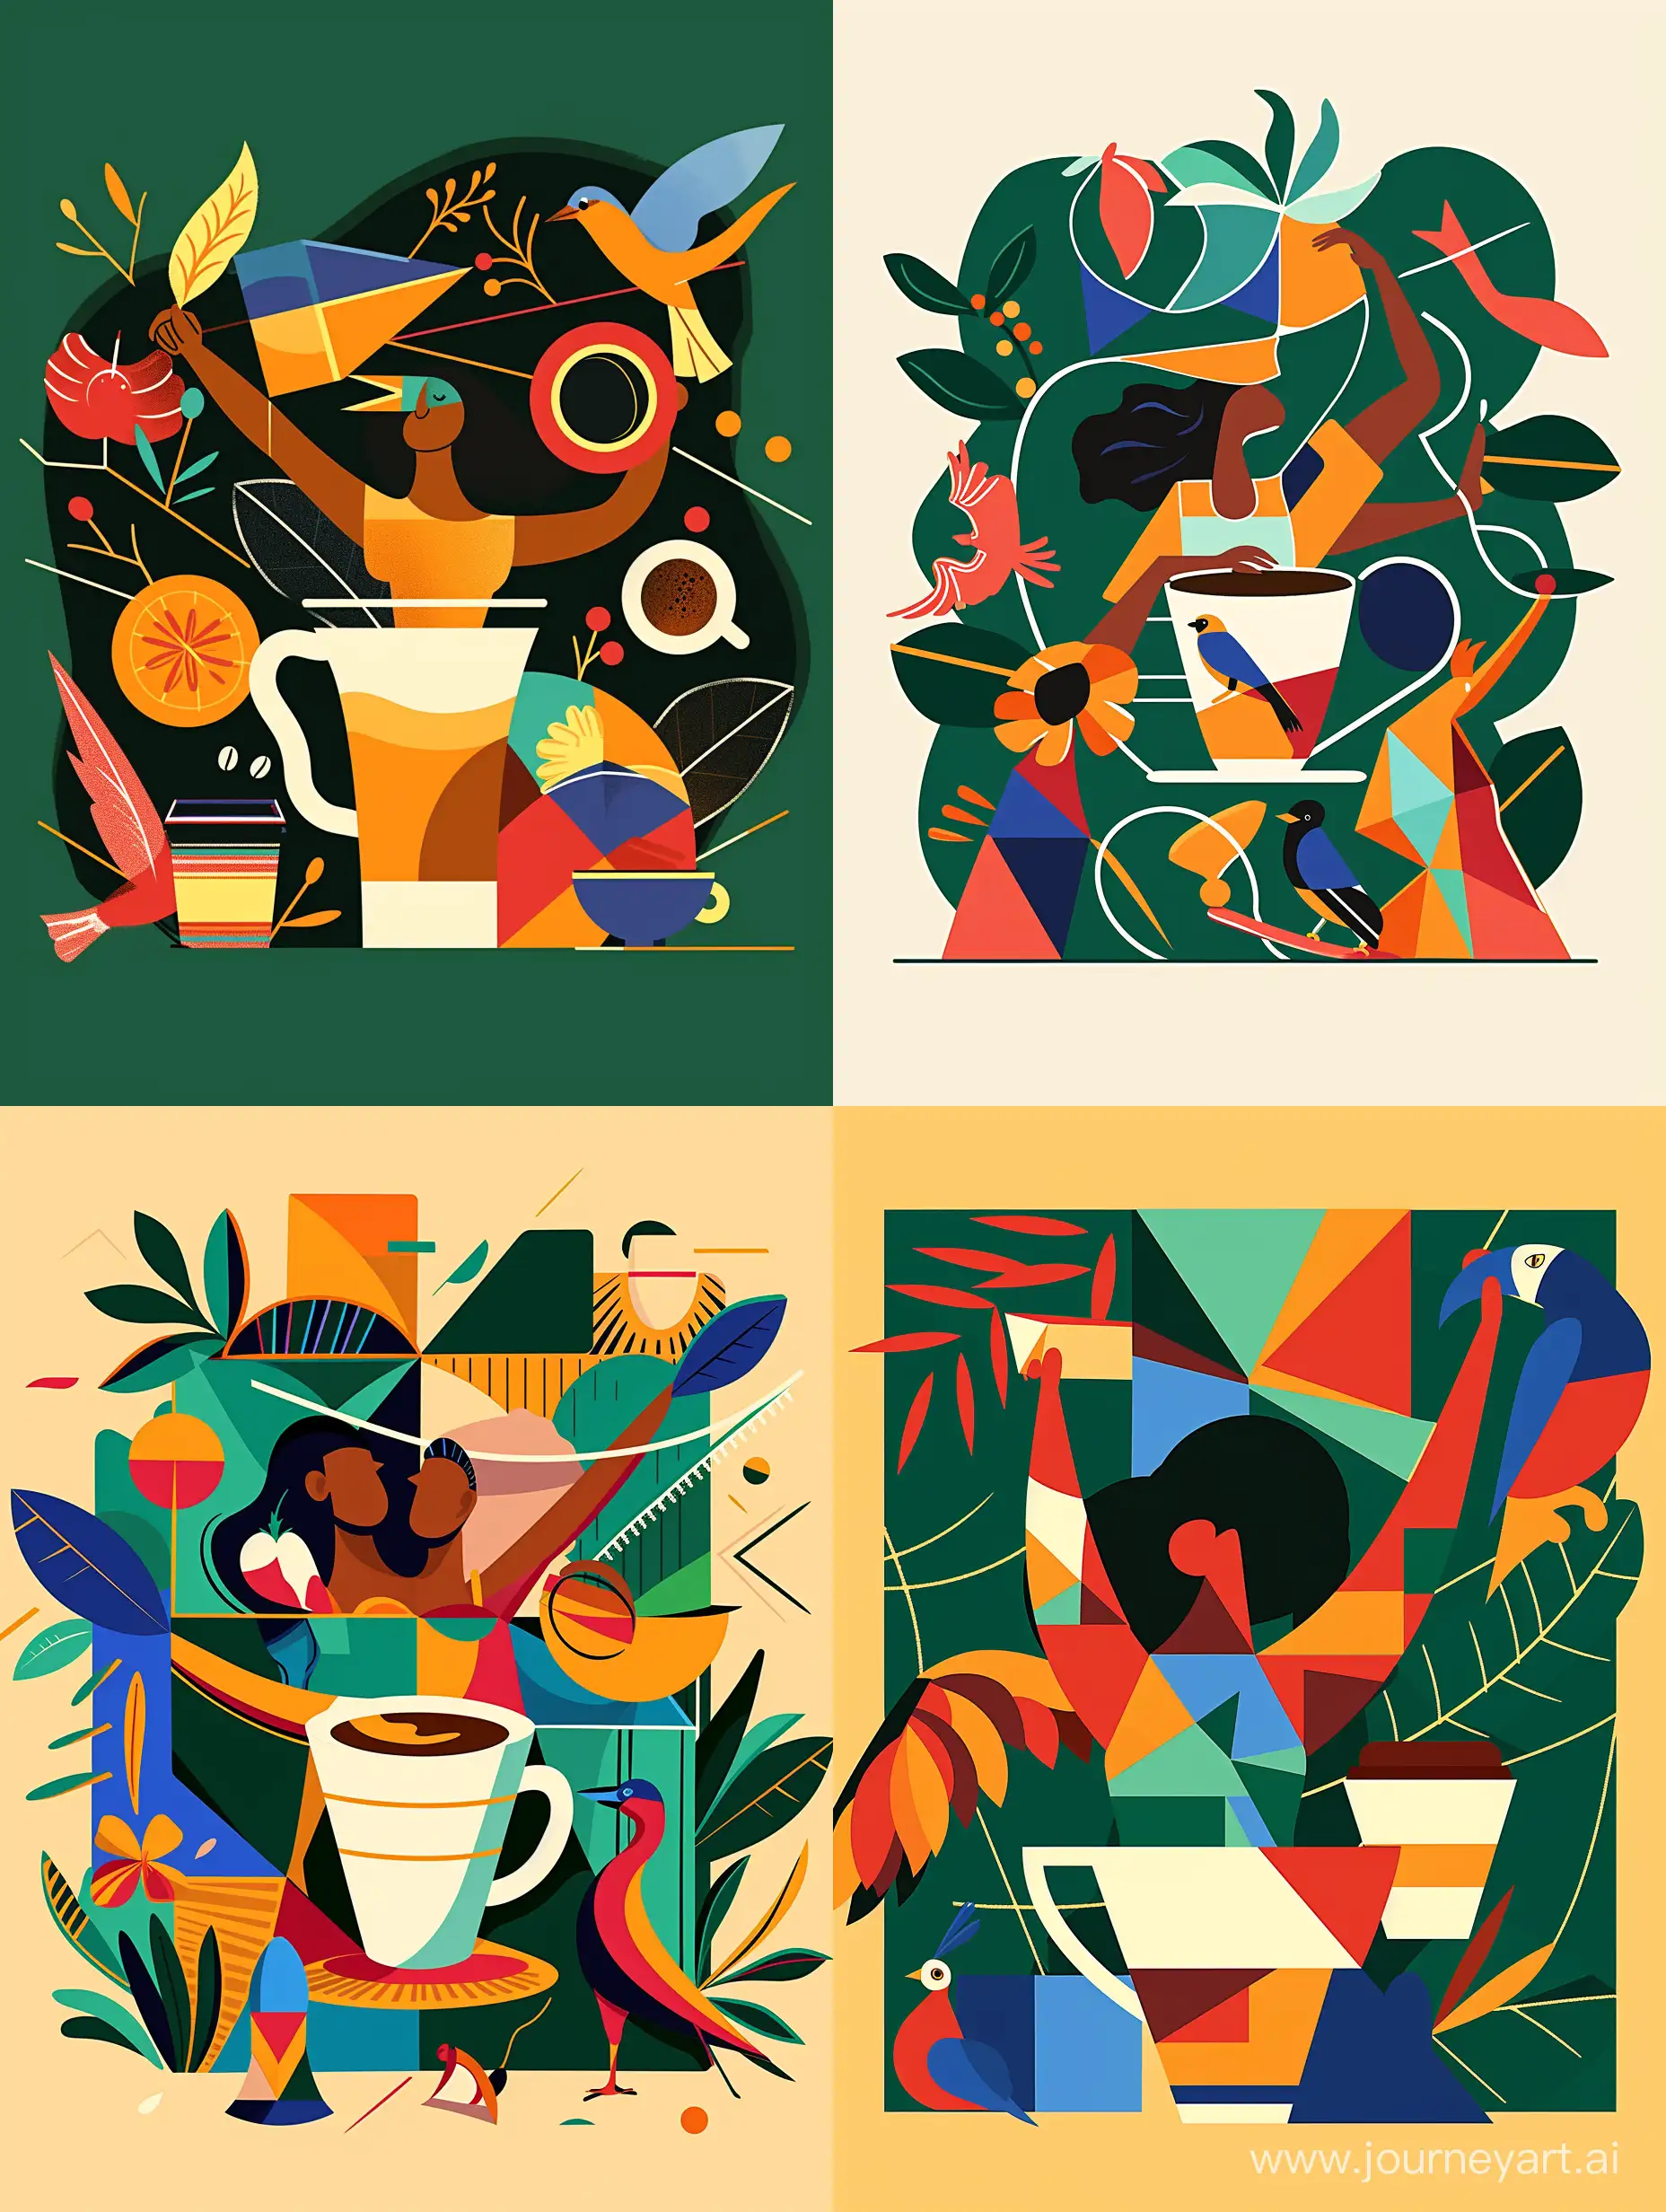 Геометрический орнамент в стиле современная абстракция кофе в чашке, символы Бразилии, природа, птицы и животные Бразилии, кофе - serf https://cdn.dribbble.com/users/938871/screenshots/16169500/media/f2851351ac2a3df04e23db94fd376a14.png